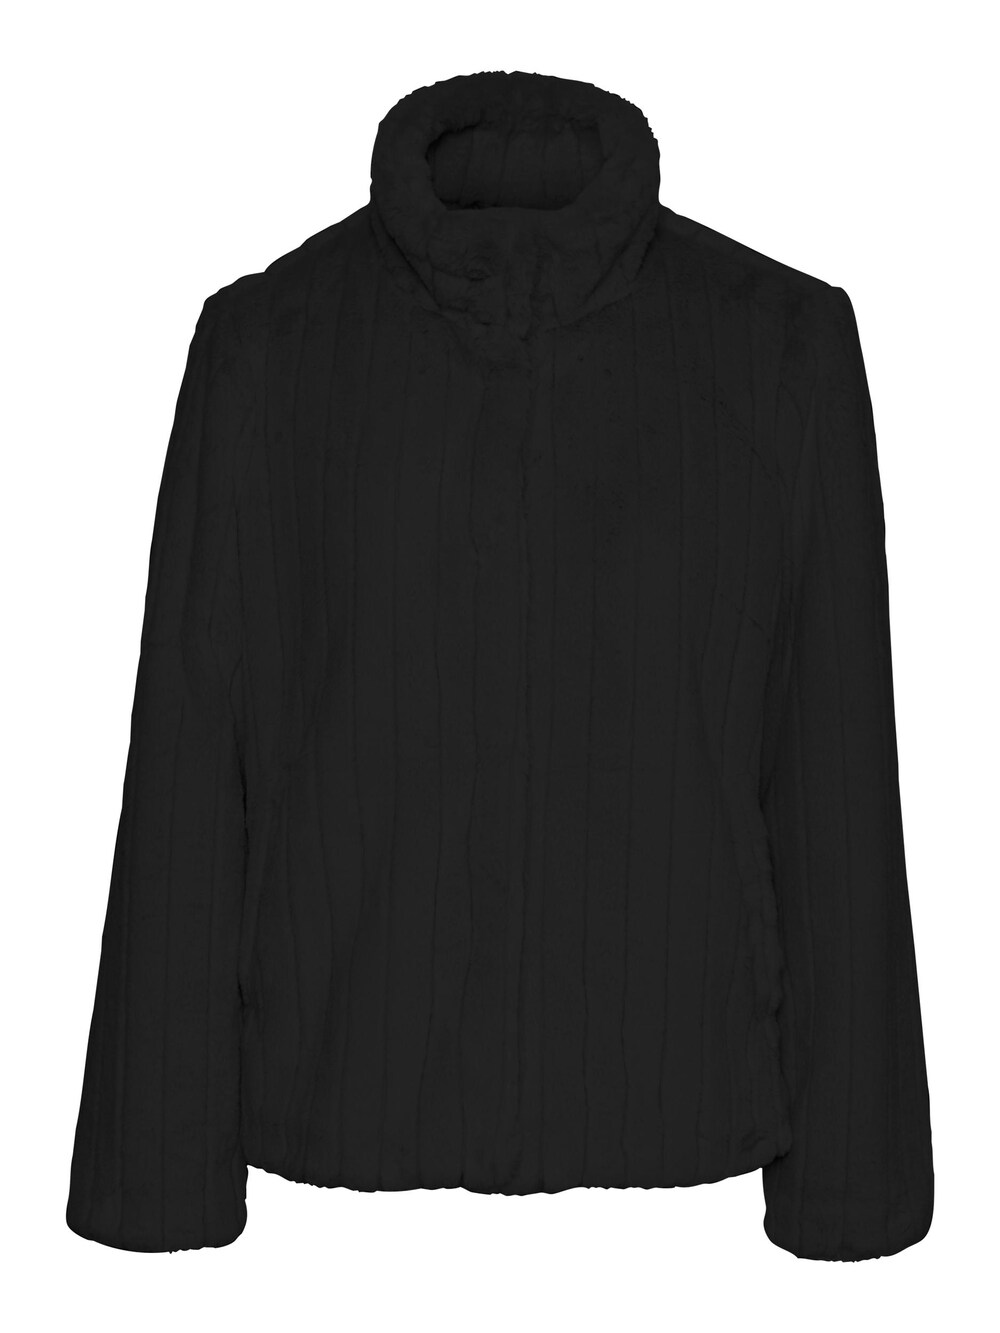 Межсезонная куртка Vero Moda FIONA, черный